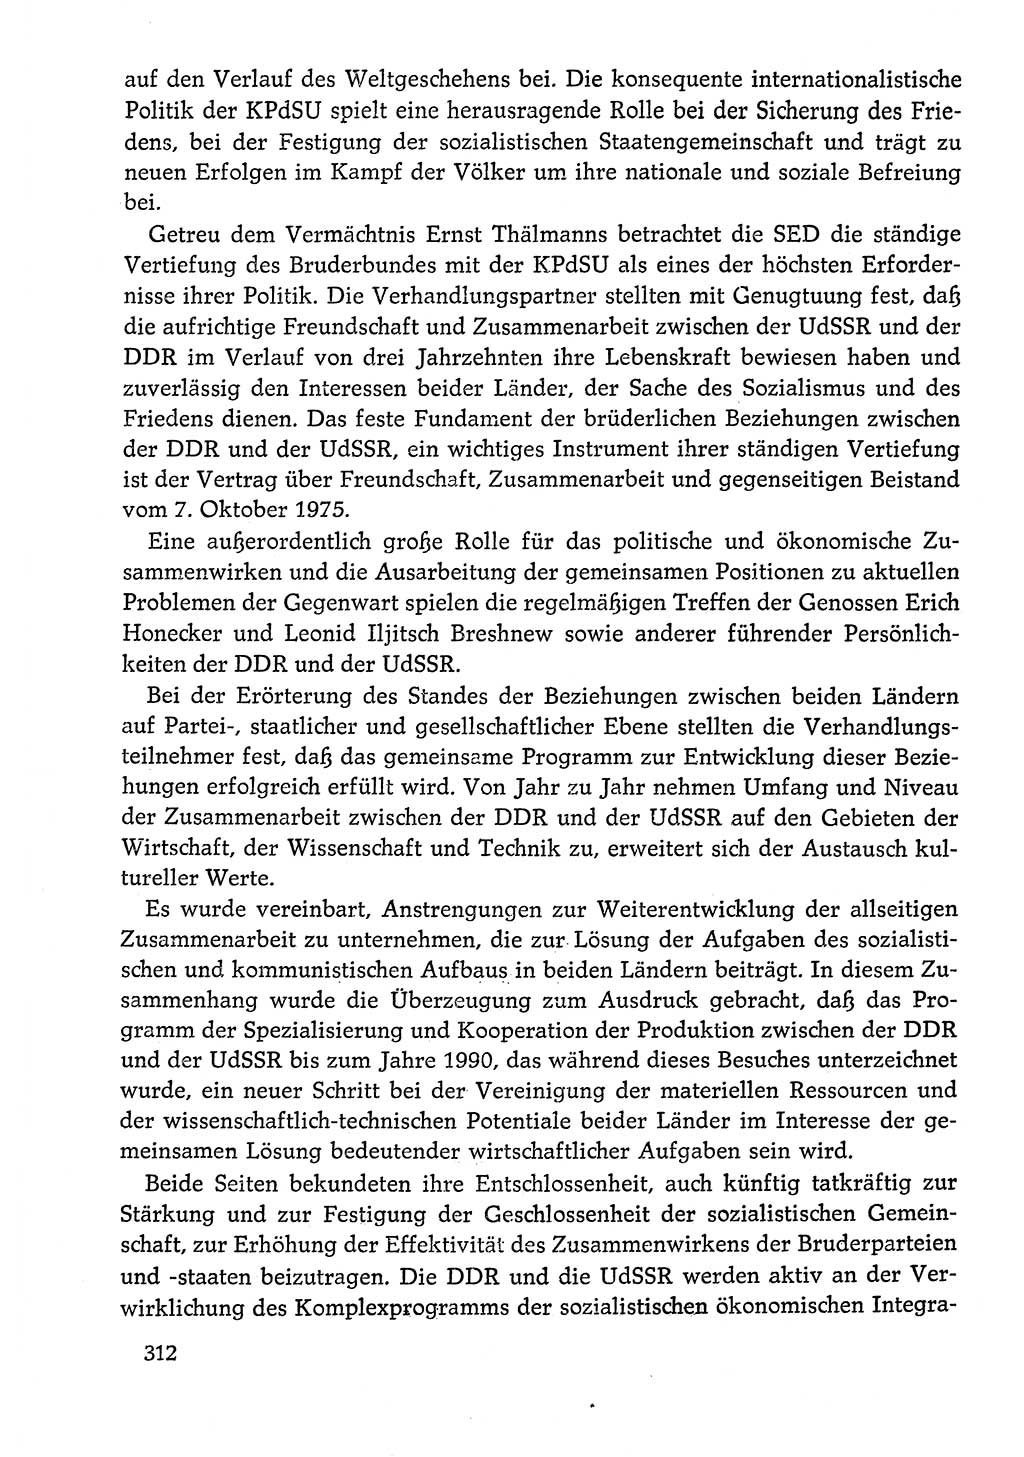 Dokumente der Sozialistischen Einheitspartei Deutschlands (SED) [Deutsche Demokratische Republik (DDR)] 1978-1979, Seite 312 (Dok. SED DDR 1978-1979, S. 312)